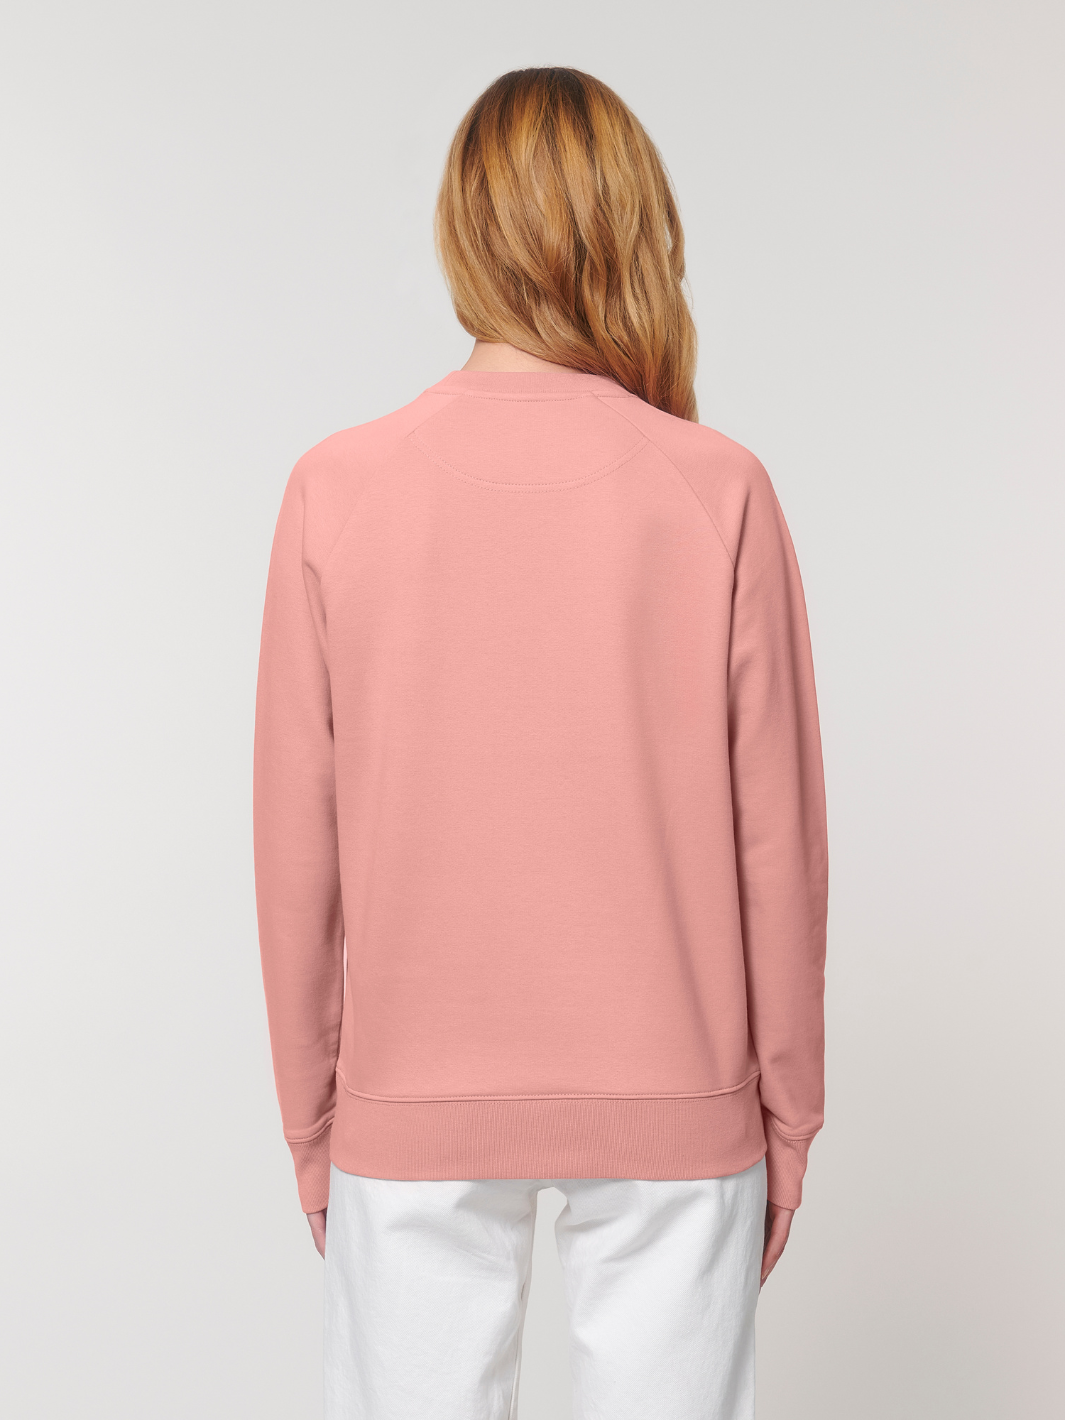 Damen-Sweatshirt Cozy | Rosa